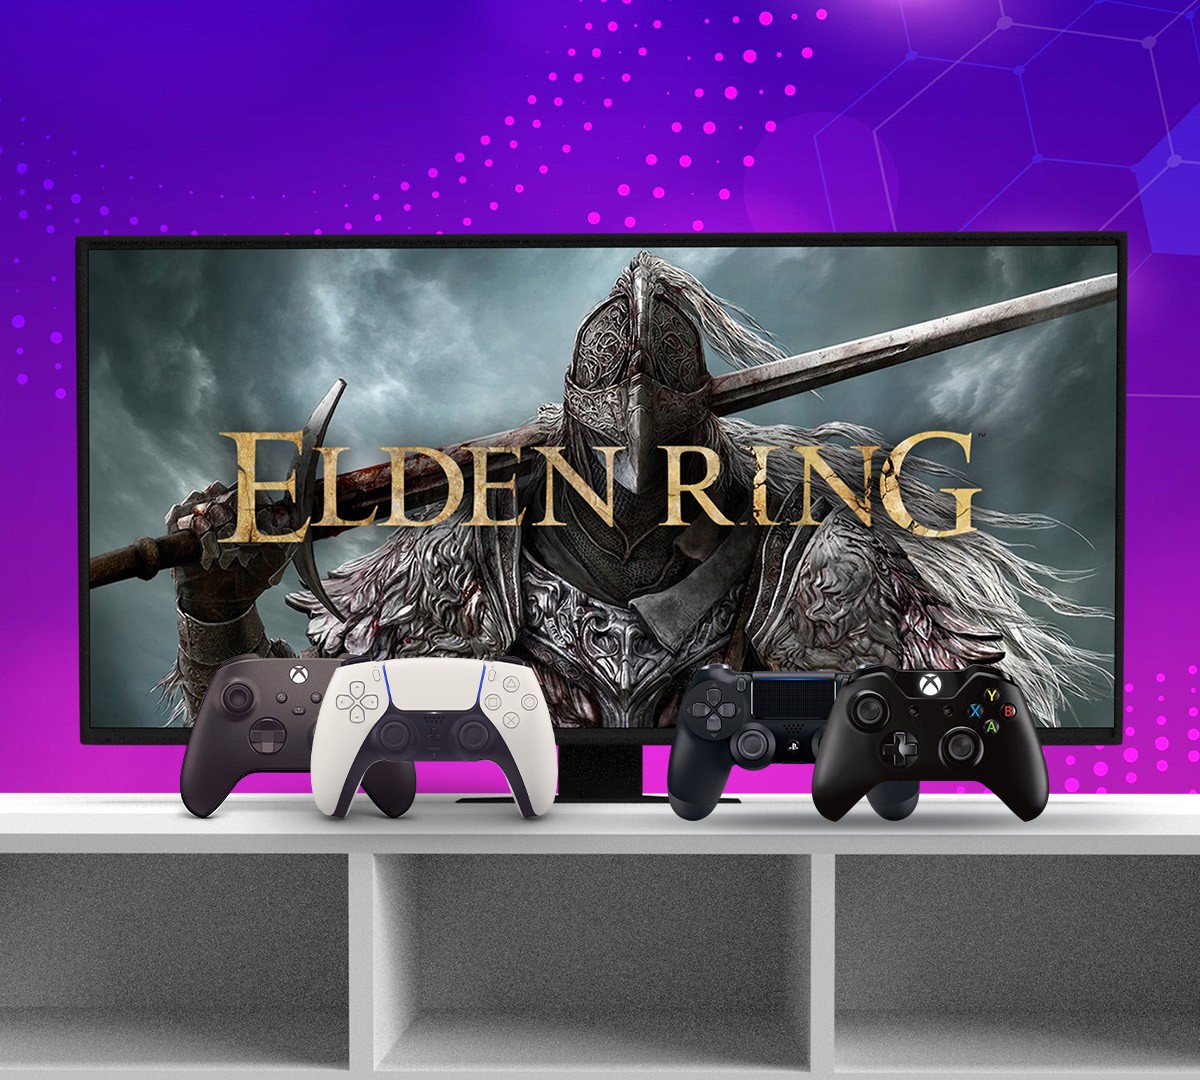 Elden Ring ganha data de lançamento para 2022 e trailer de gameplay